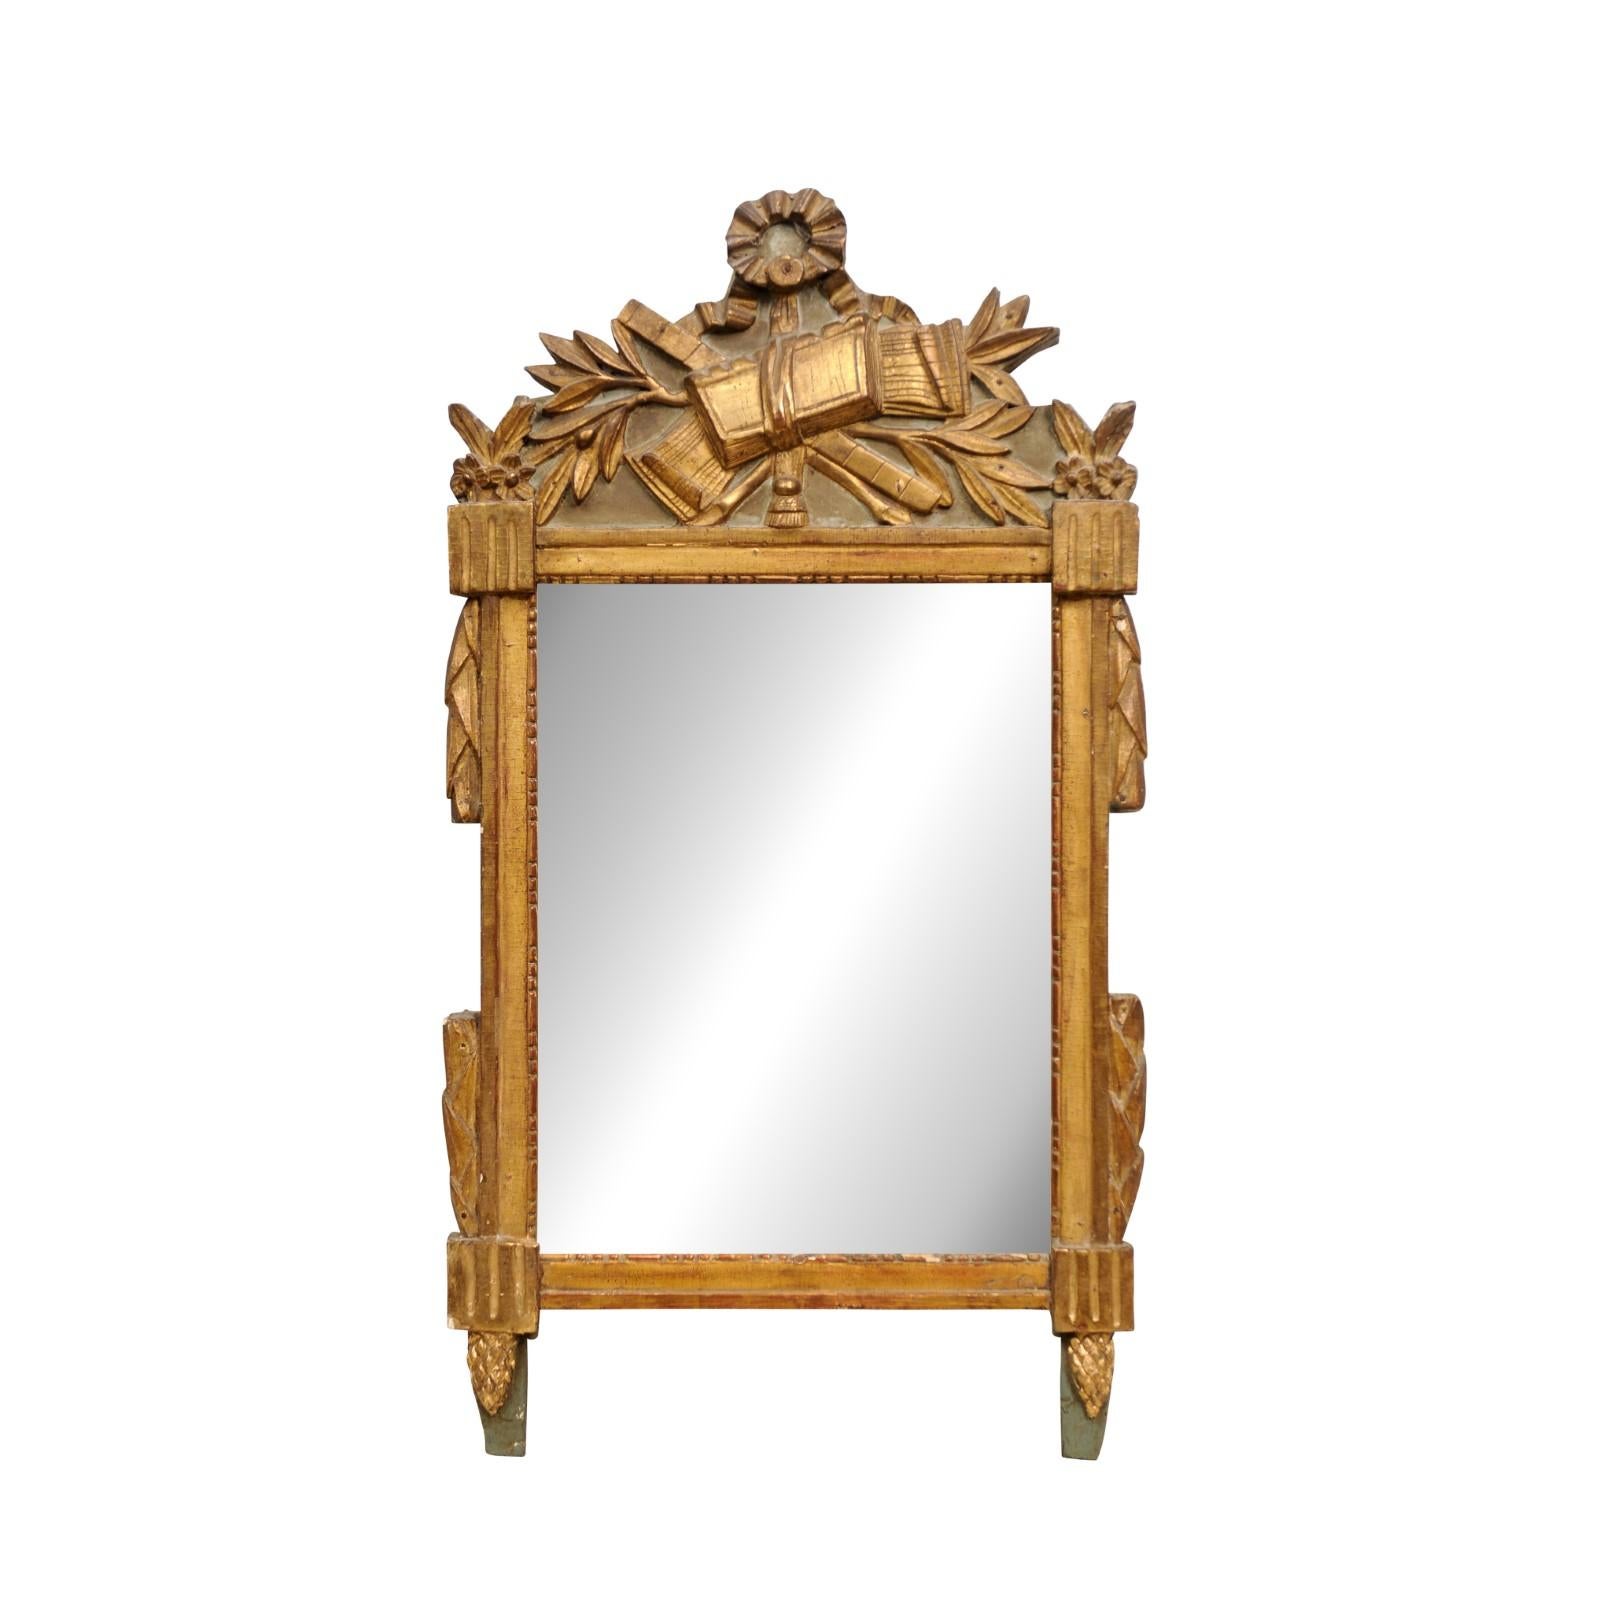 Miroir en bois doré d'époque Louis XVI vers 1790 avec allégorie des arts libéraux sculptée en ruban, motifs de feuilles de laurier et de pommes de pin, fond peint, miroir légèrement vieilli et caractère rustique. Voici un magnifique miroir en bois